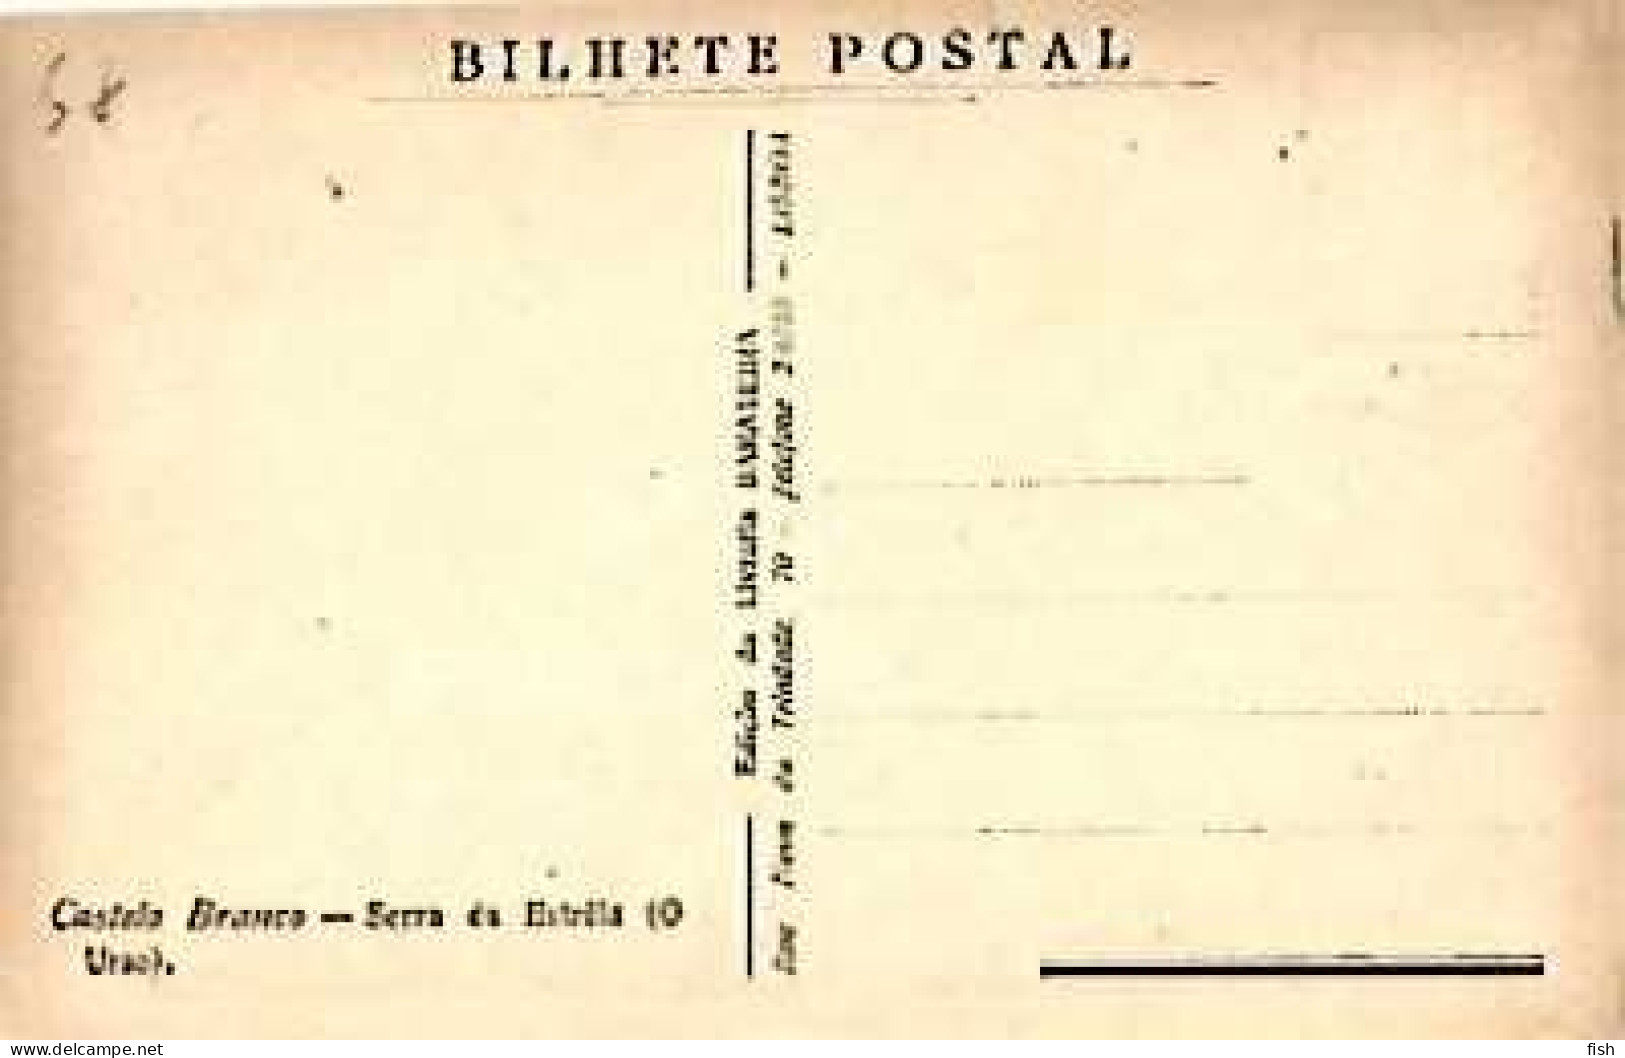 Portugal & Postal, Castelo Branco, Serra Da Estrela, O Urso, Ed. Papelaria  Barateira, Lisboa (113345) - Castelo Branco